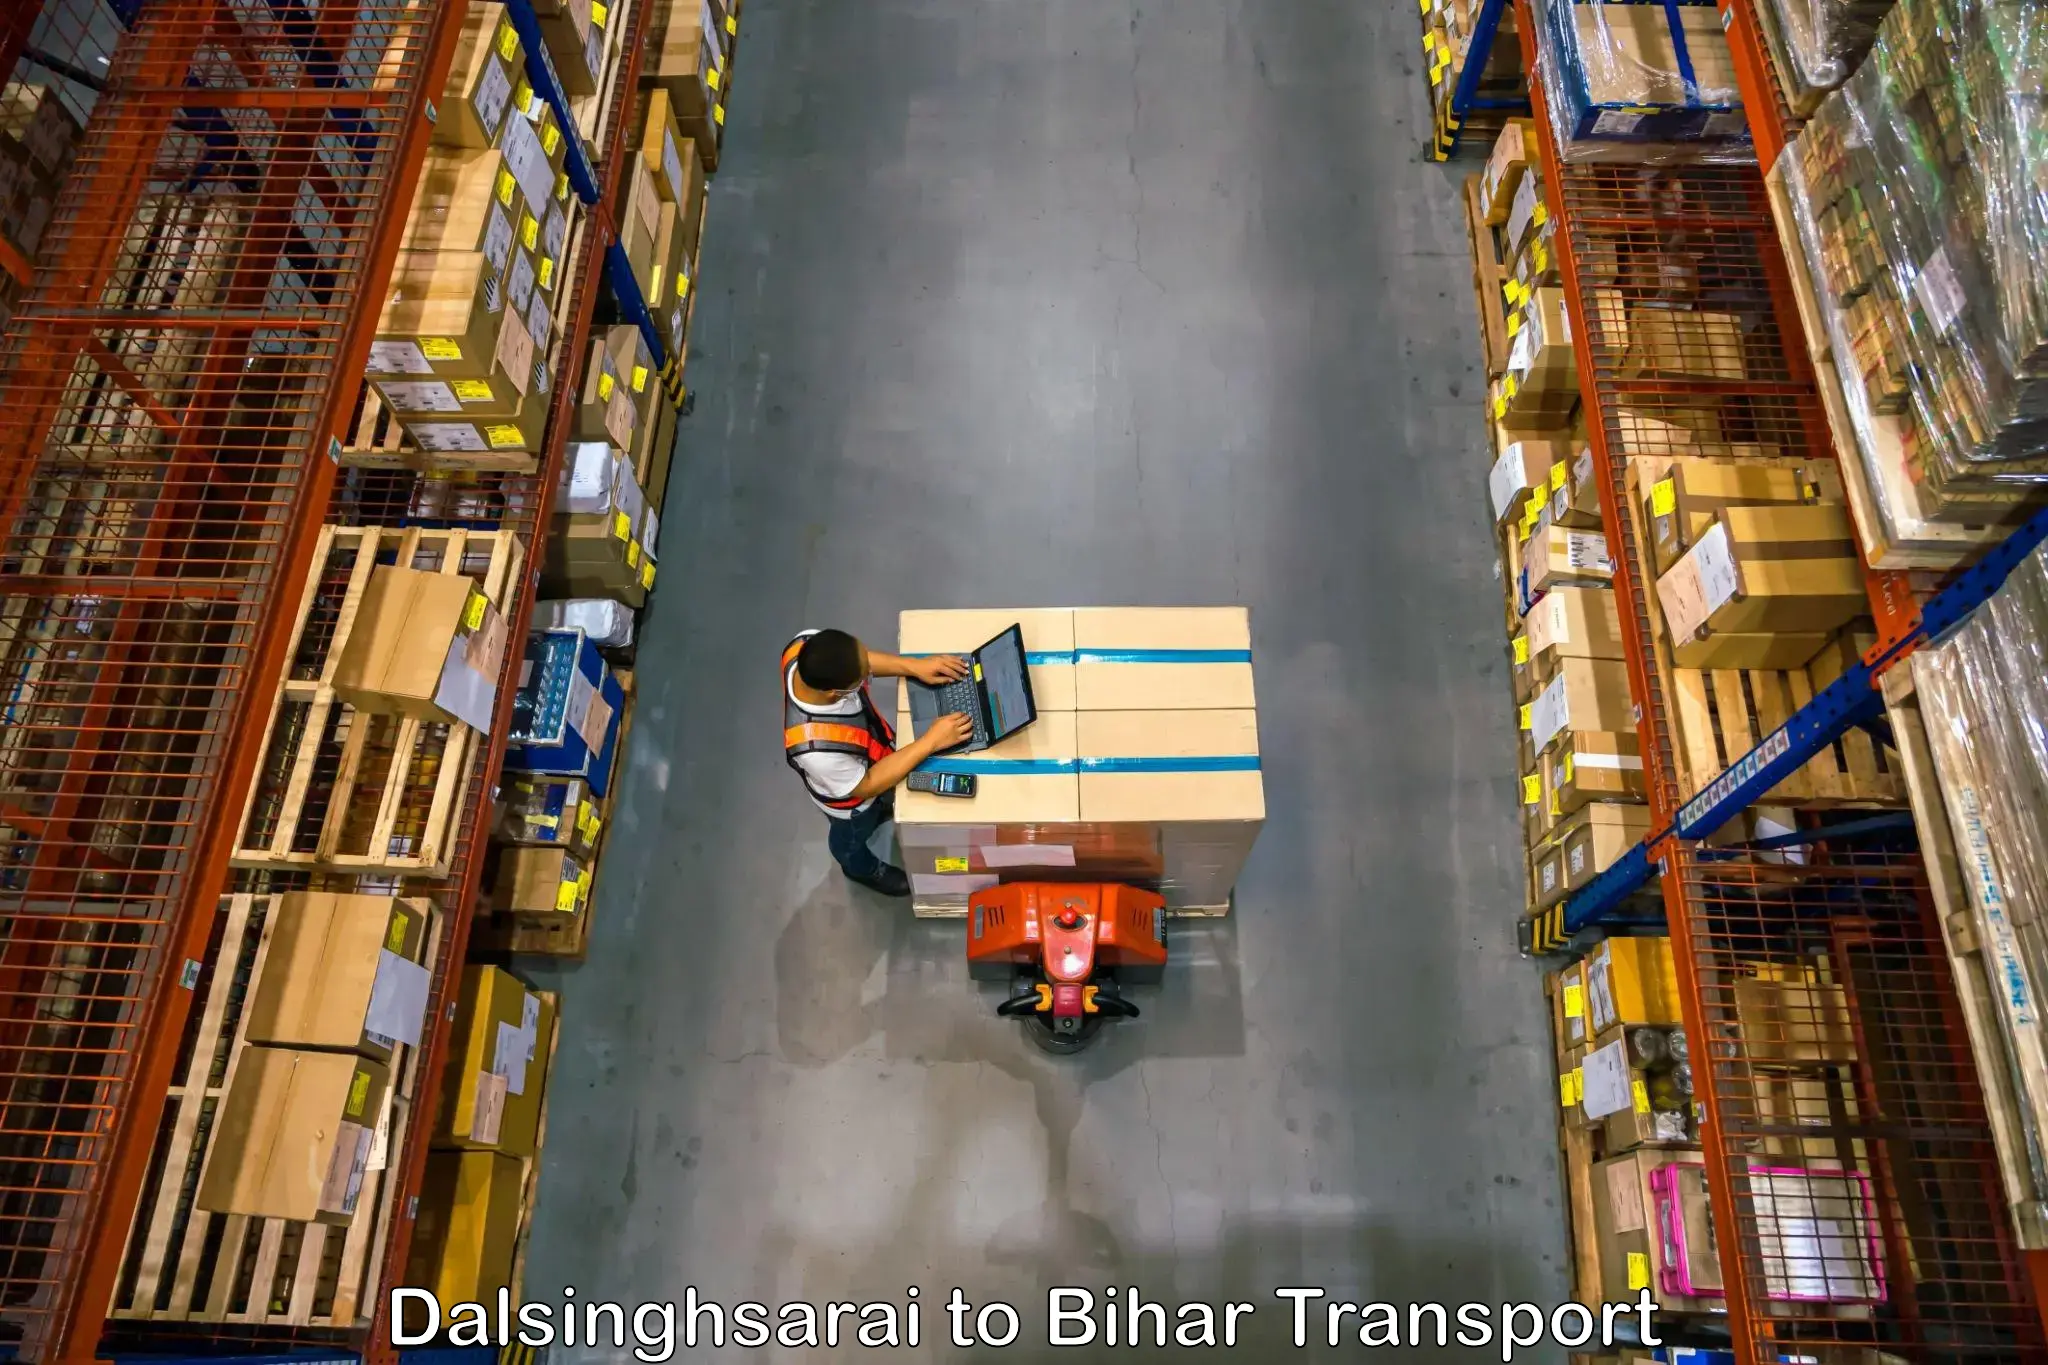 Goods delivery service Dalsinghsarai to Pupri